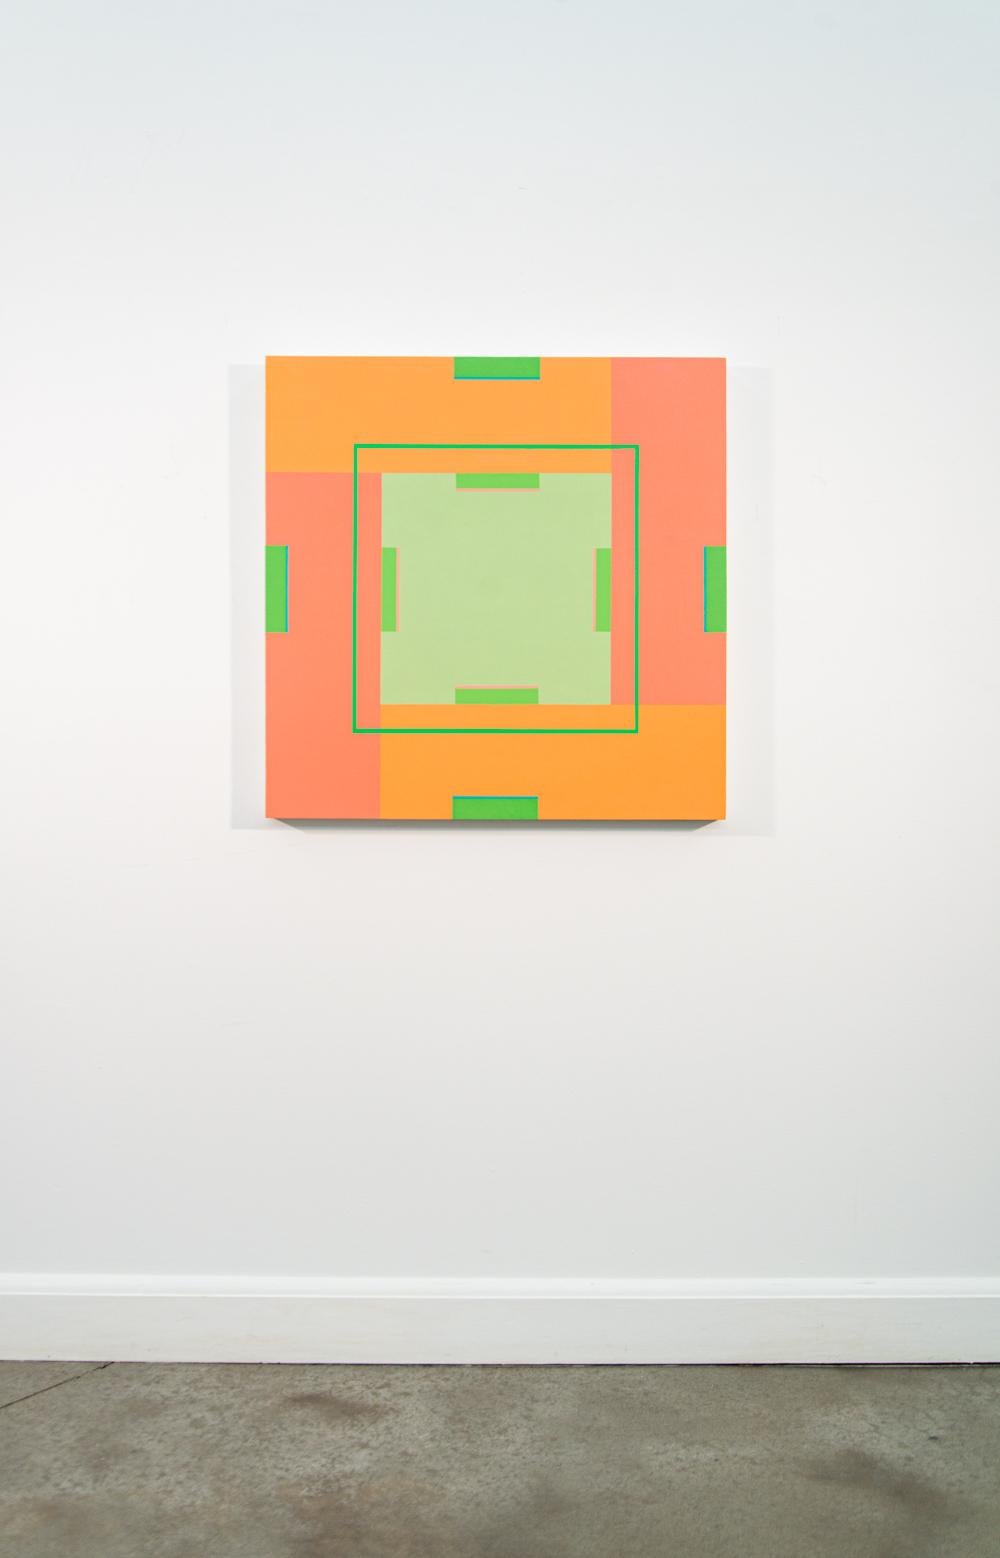 Les délicieuses compositions du moderniste Burton Kramer jouent avec des formes géométriques mises en valeur par une palette de couleurs vives. Cette pièce en acrylique présente un carré central turquoise complété par des rectangles et des lignes